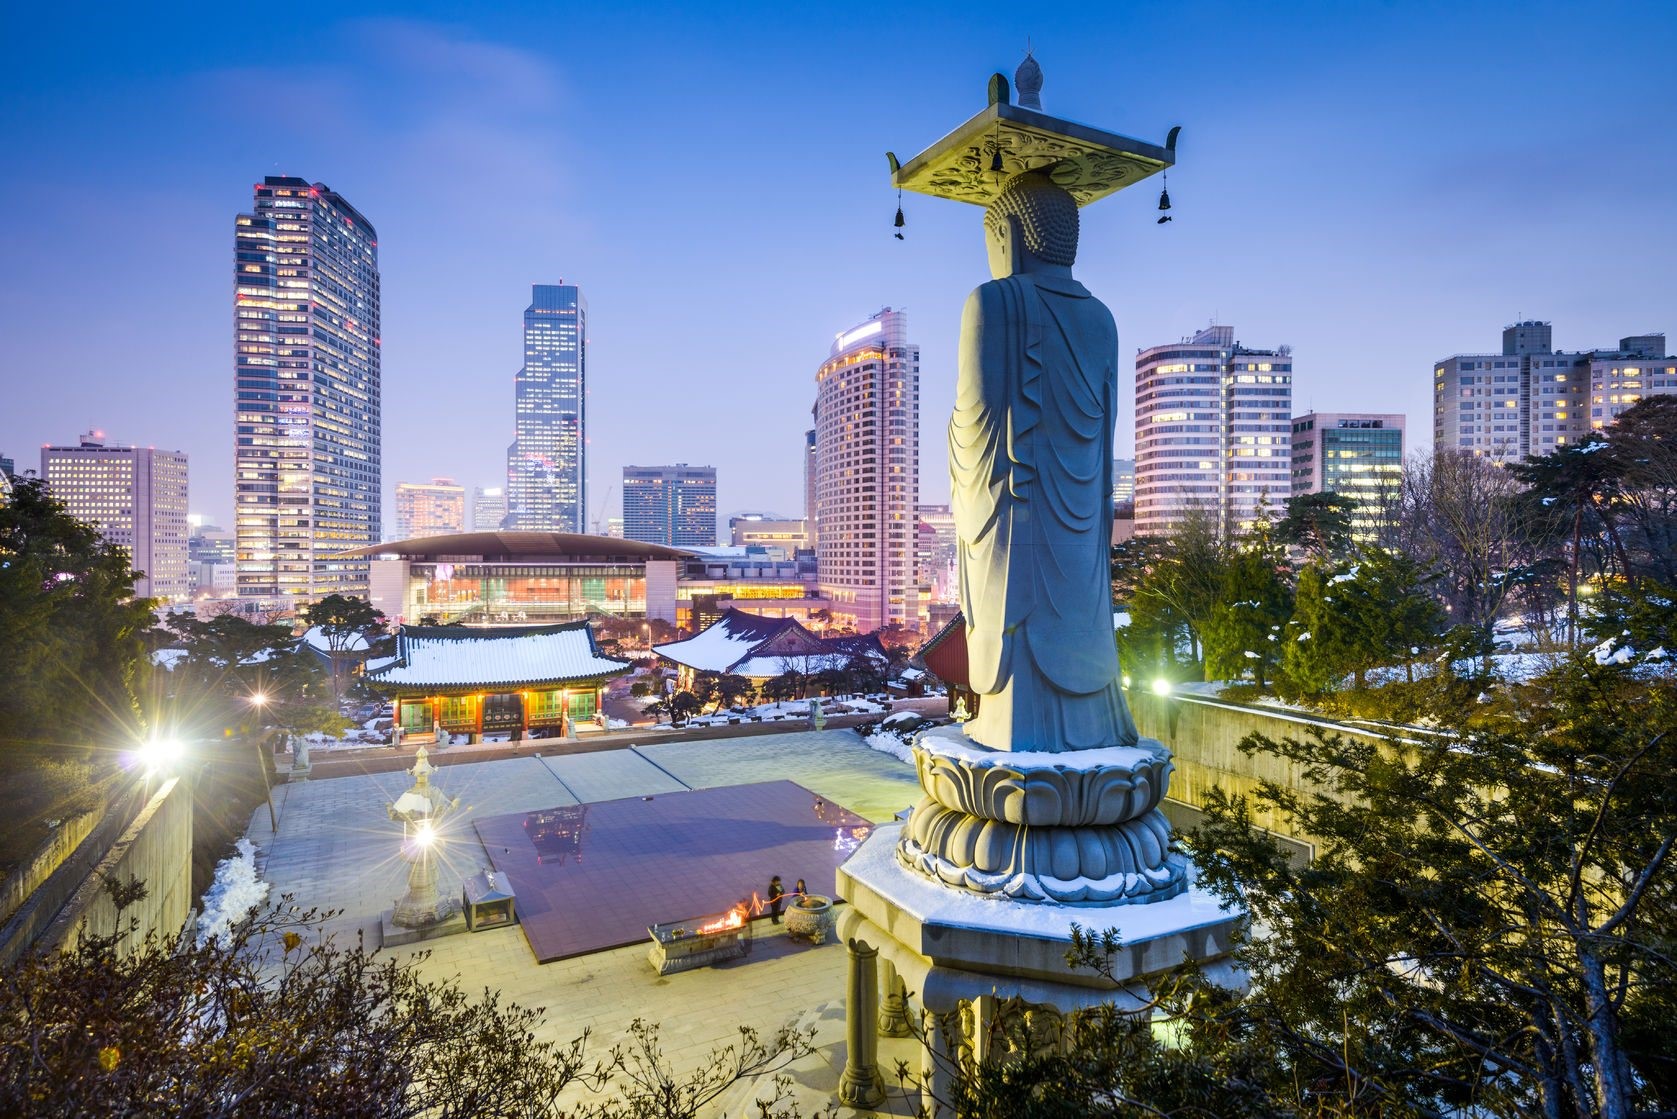 Sydkorea, en stadig hand styr aktiemarknaden iShares MSCI Sydkorea Capped ETF (NYSEArca: EWY), som försöker återspegla resultatet av MSCI Korea 25/50 Index, har under året fallit med något mindre än fyra (4) procen